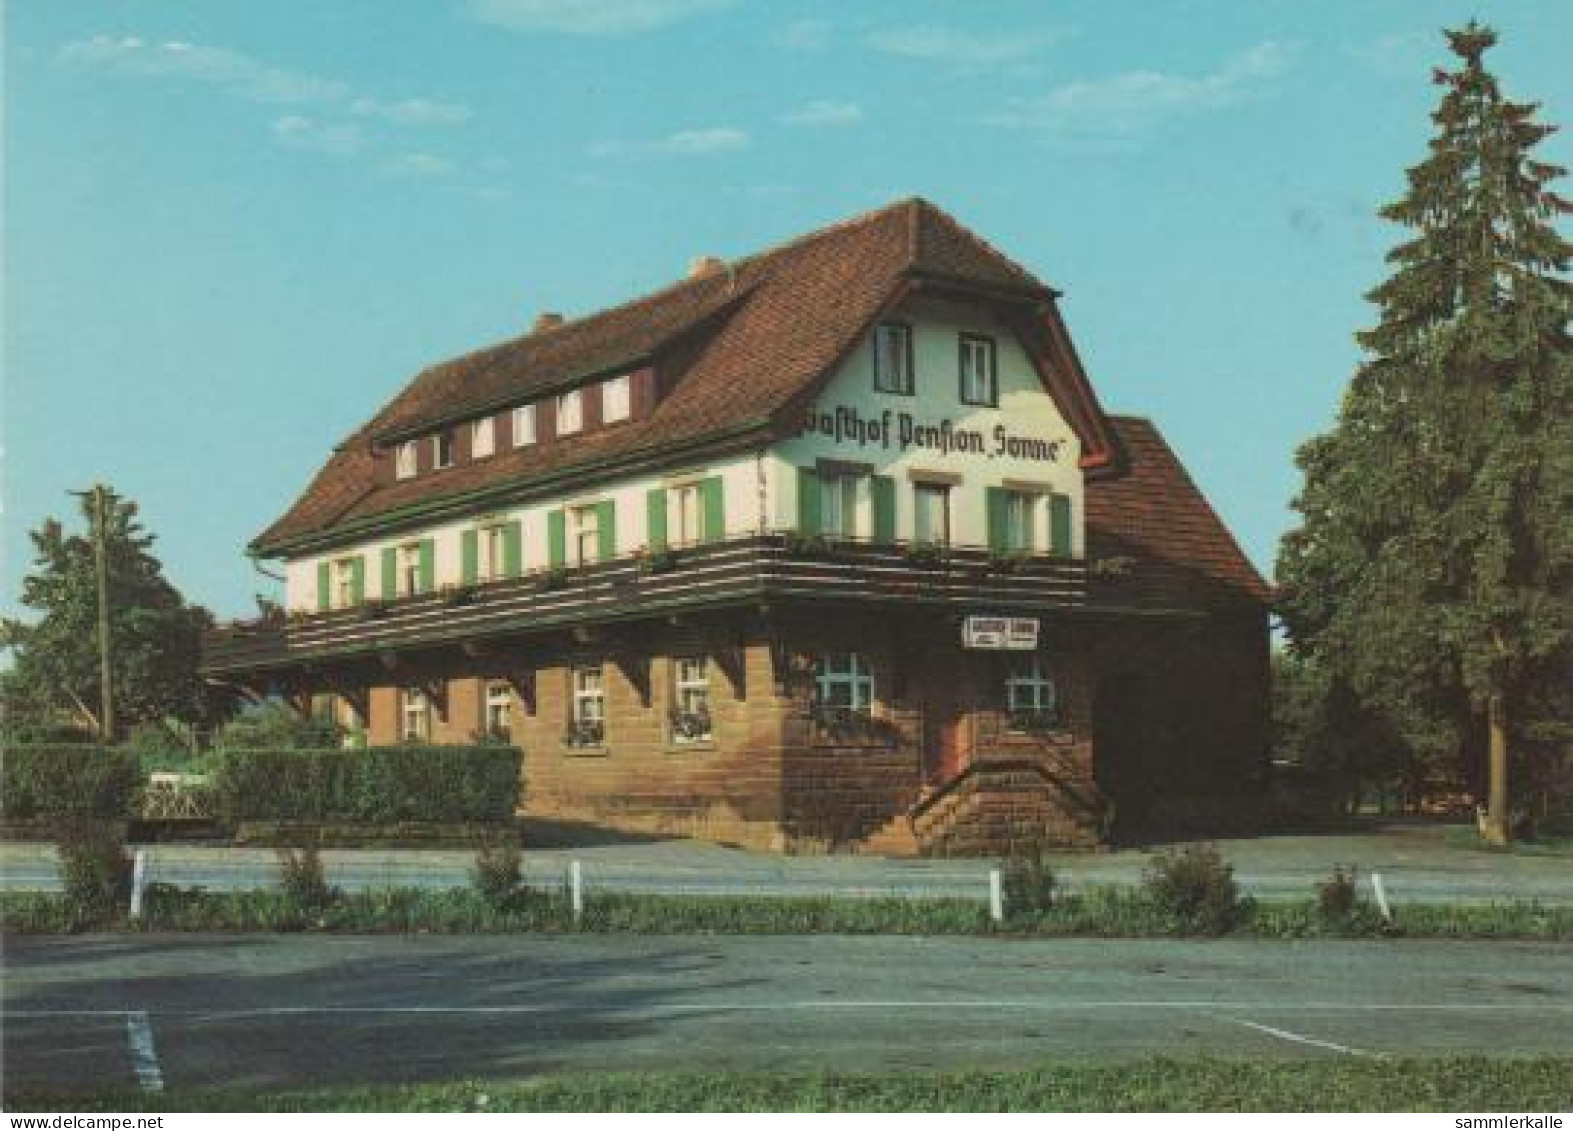 1610 - Alpirsbach - Bei Alpirsbach/Schwarzwald - Ca. 1980 - Alpirsbach